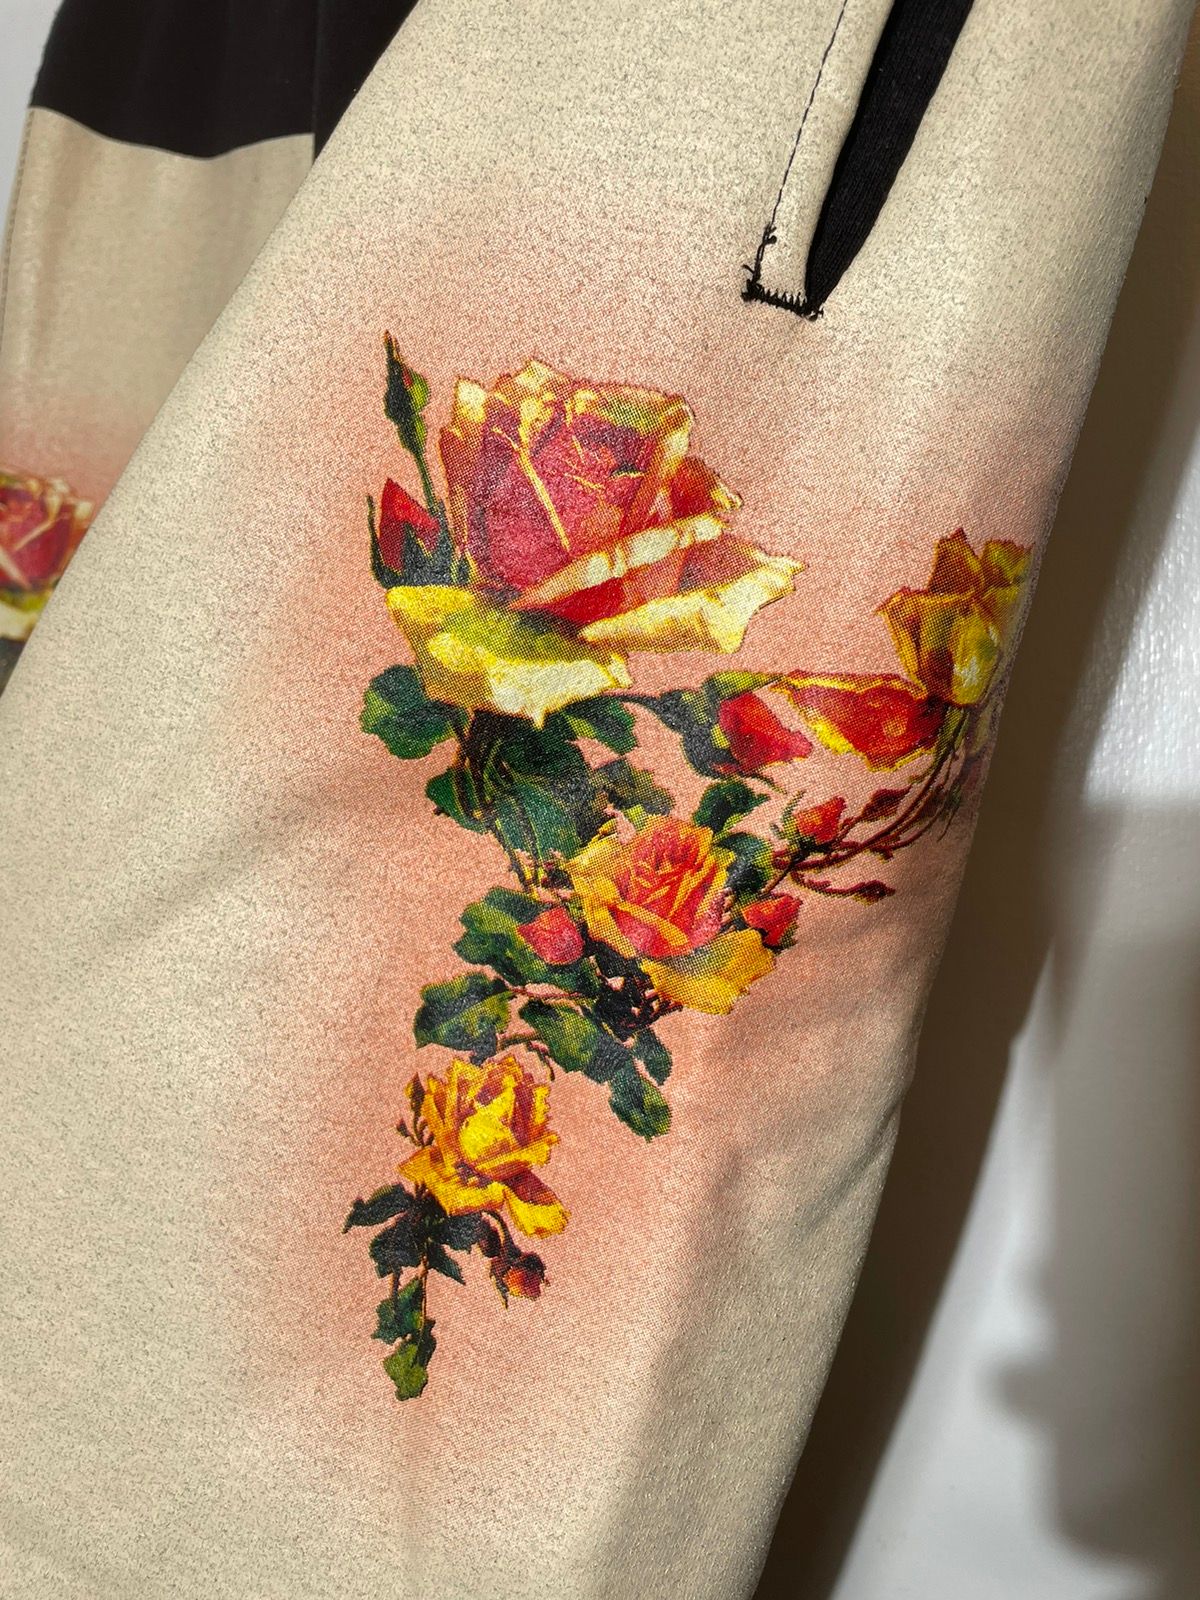 Supreme Supreme Jean Paul Gaultier Floral Sweatpants SS ‘19 Size US 32 / EU 48 - 4 Thumbnail